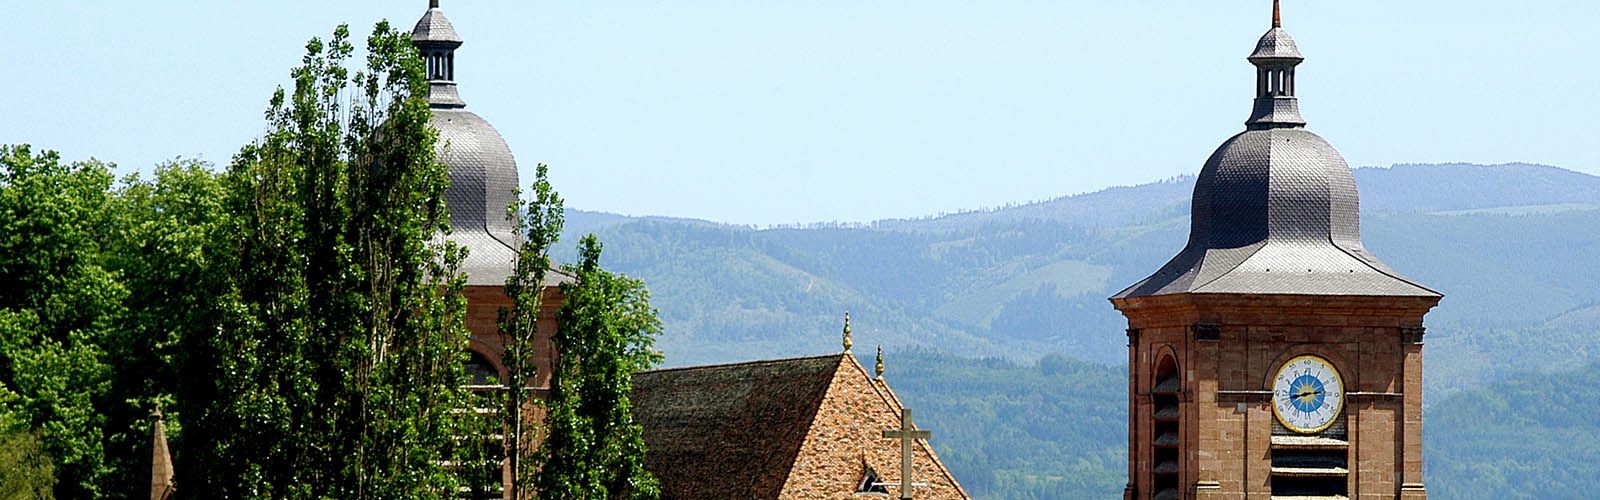 Saint-Dié-des-Vosges 2